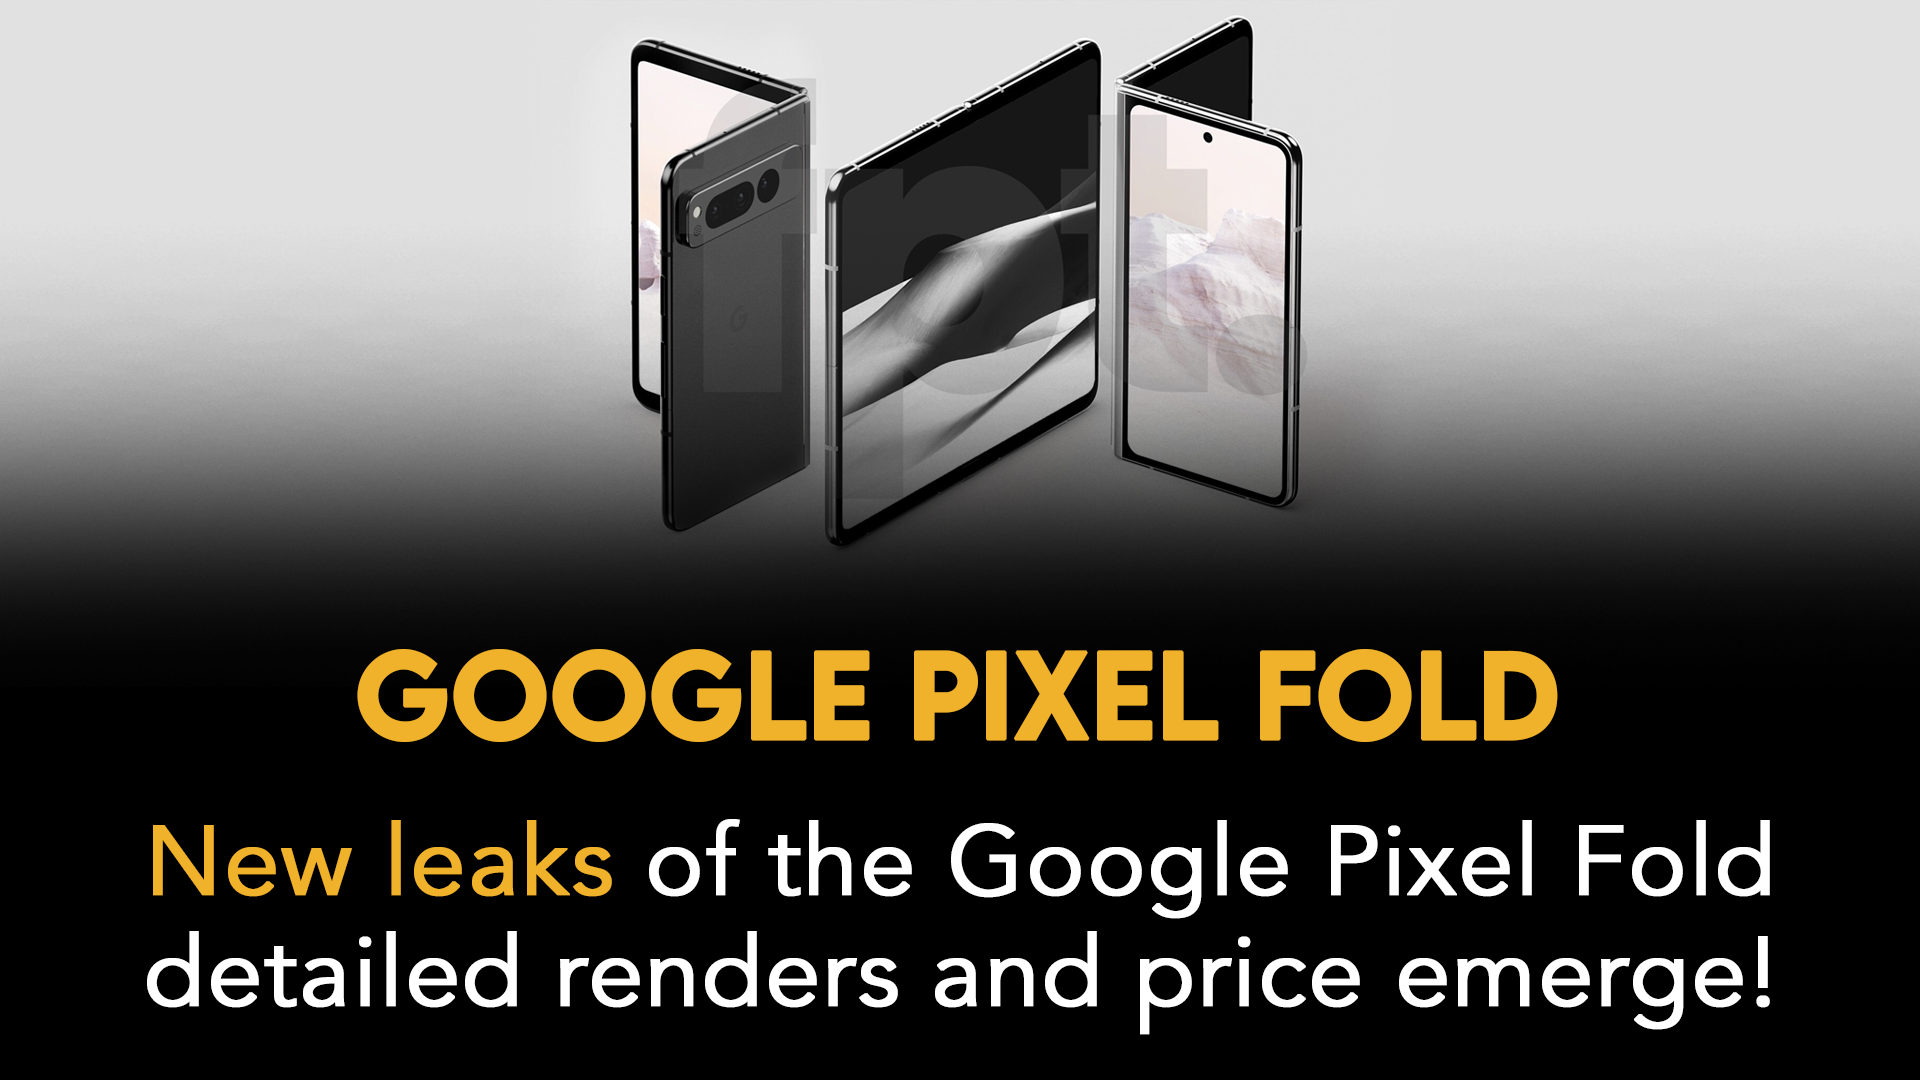 Google Pixel Fold shown in detailed renders, price leaks -  news